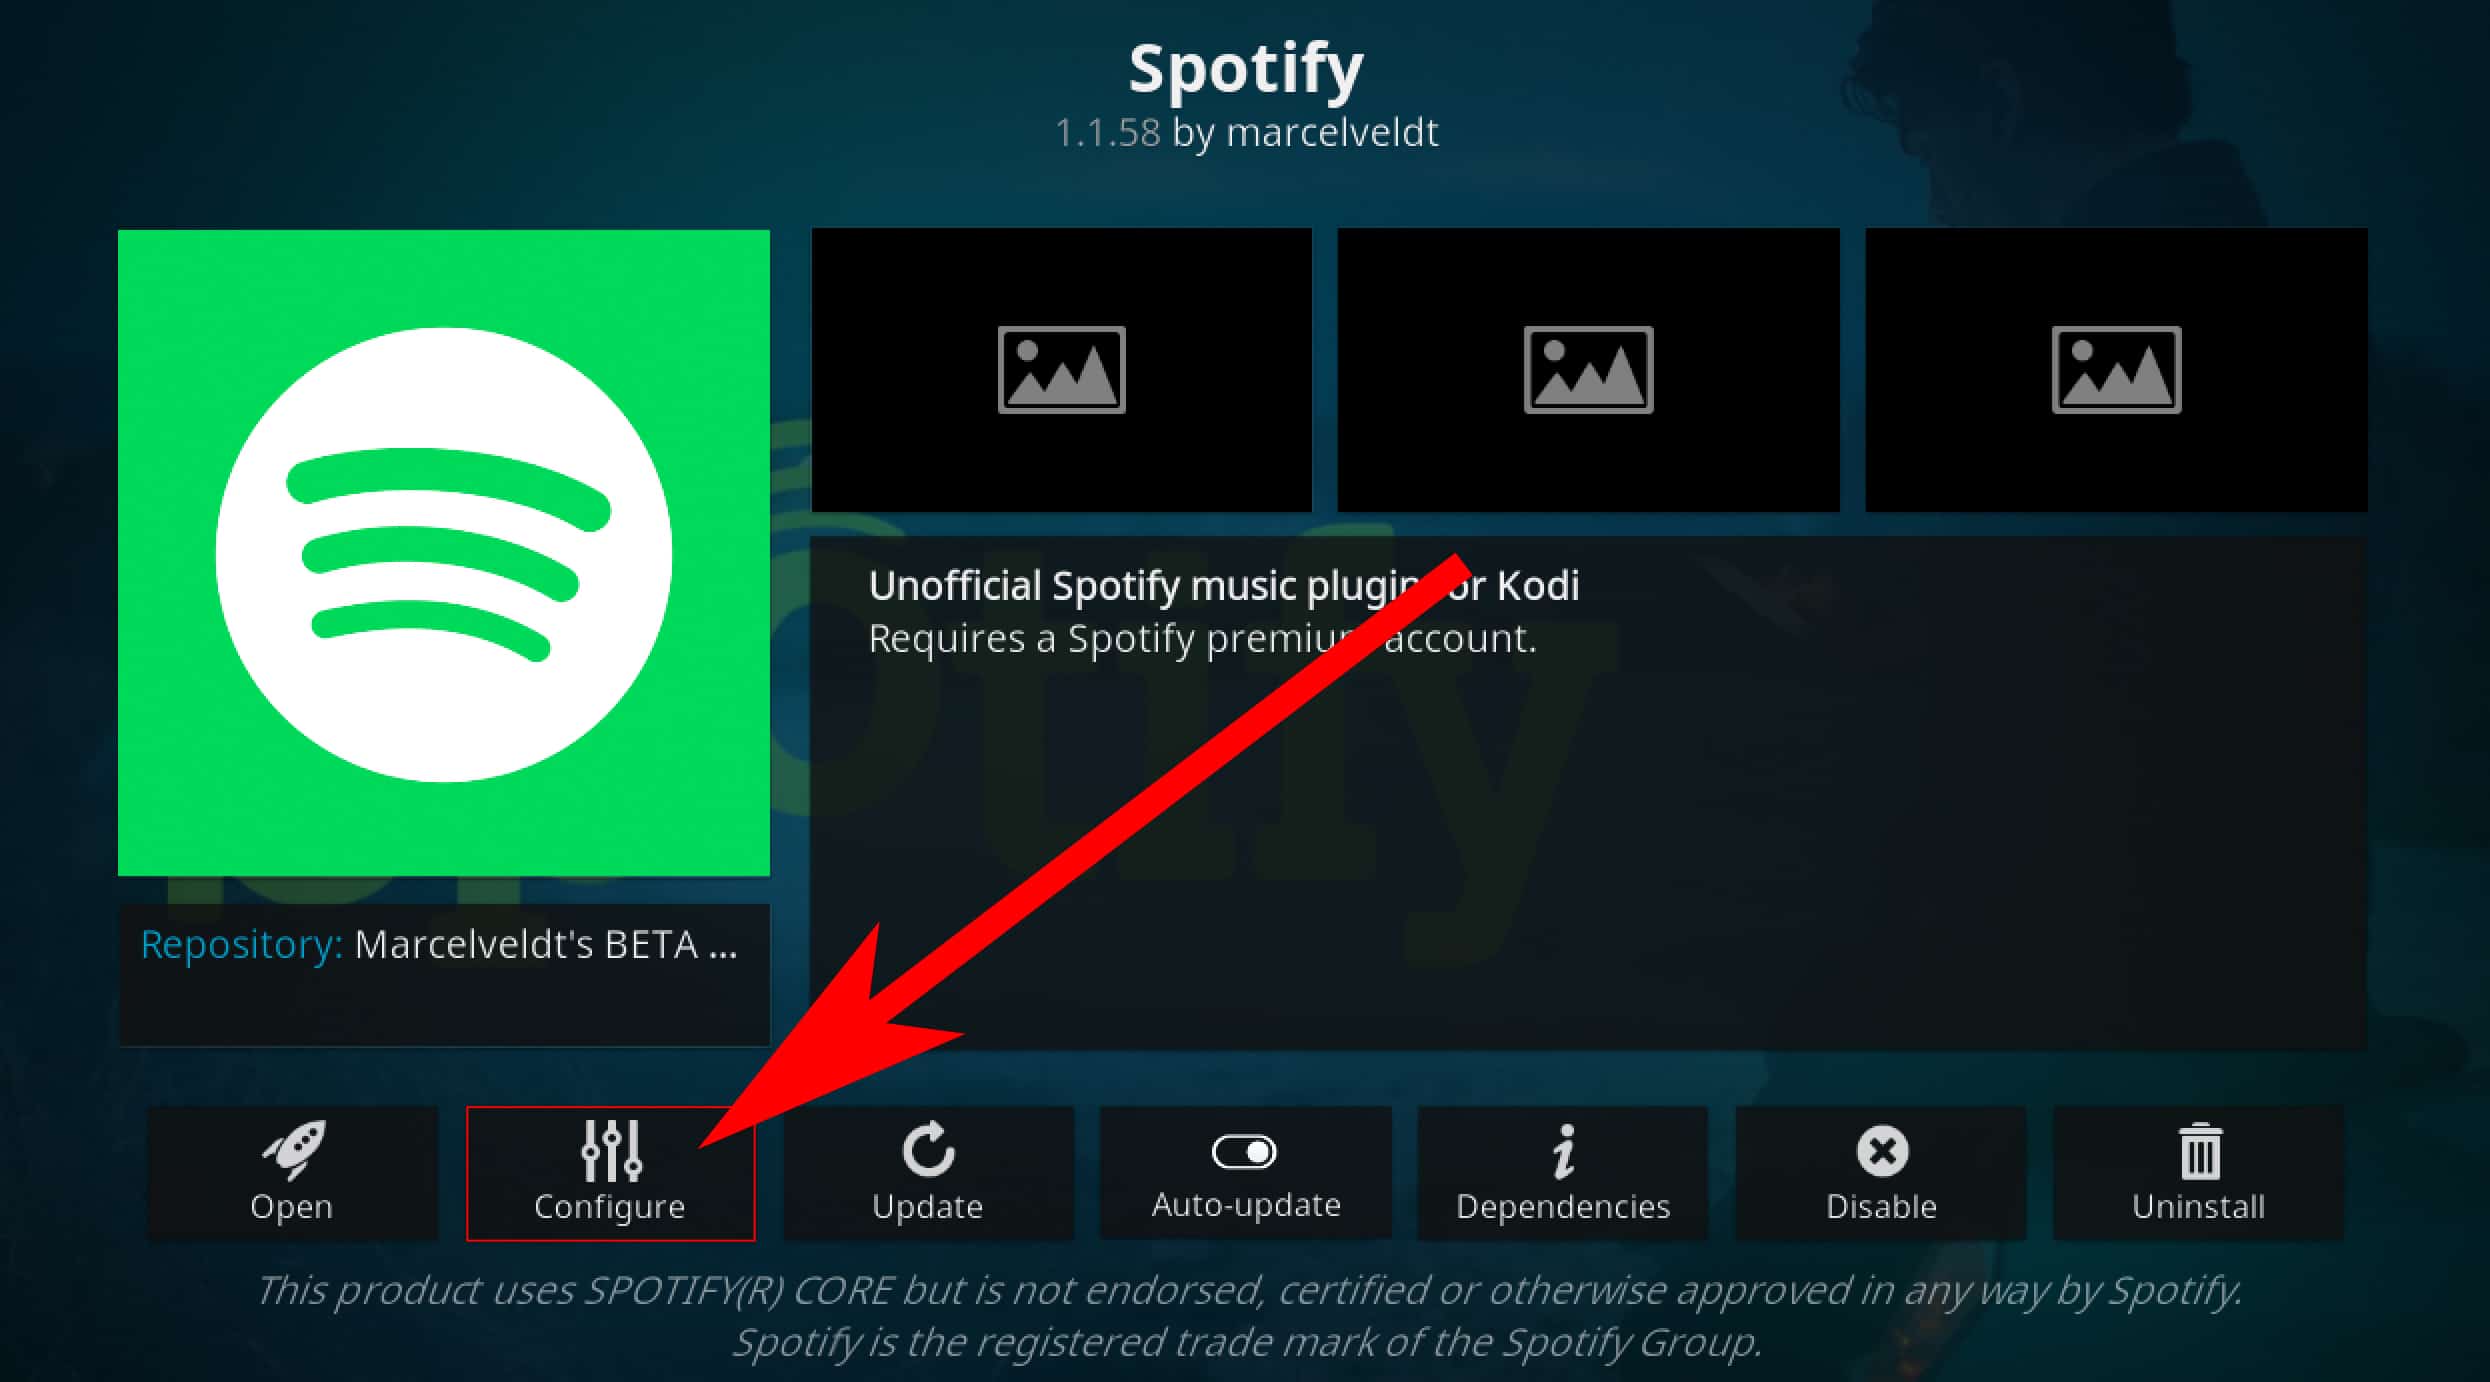 for windows instal Spotify 1.2.13.661